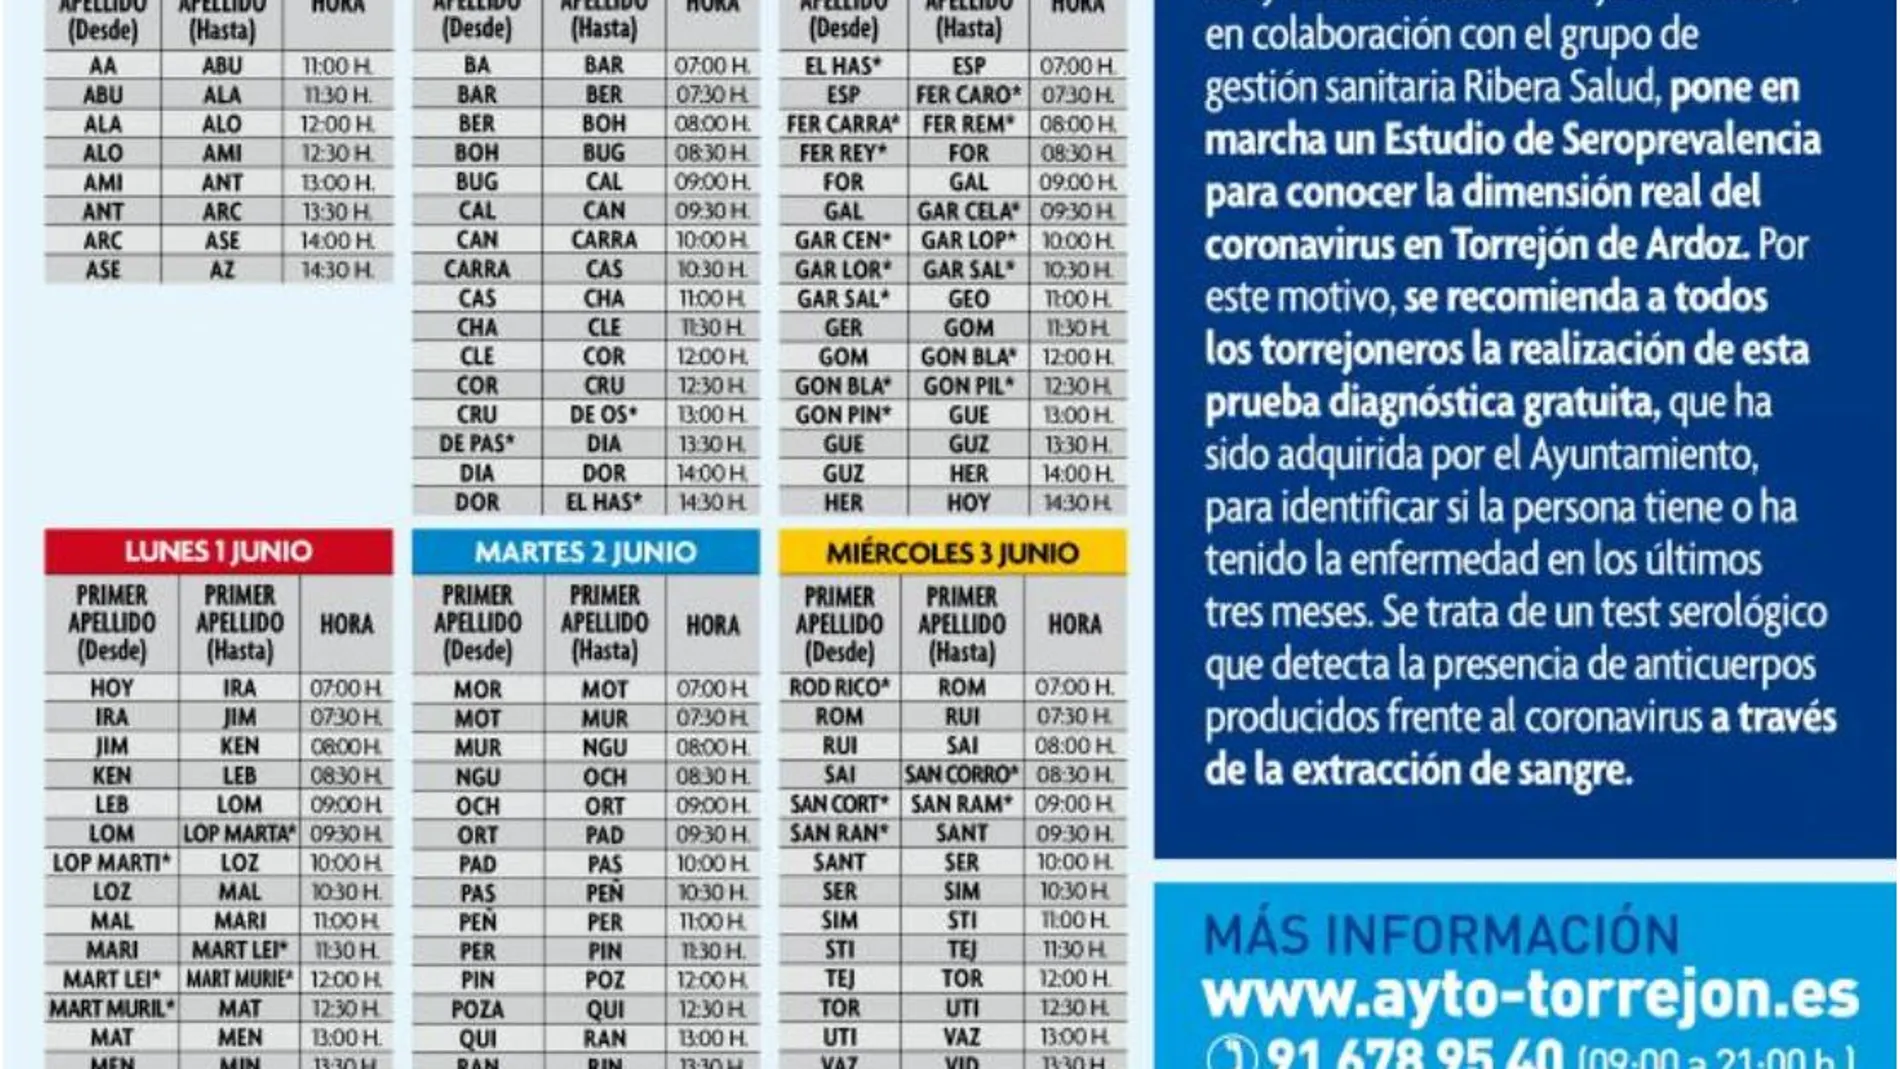 Los horarios que ha dispuesto el Ayuntamiento de Torrejón para sus vecinos